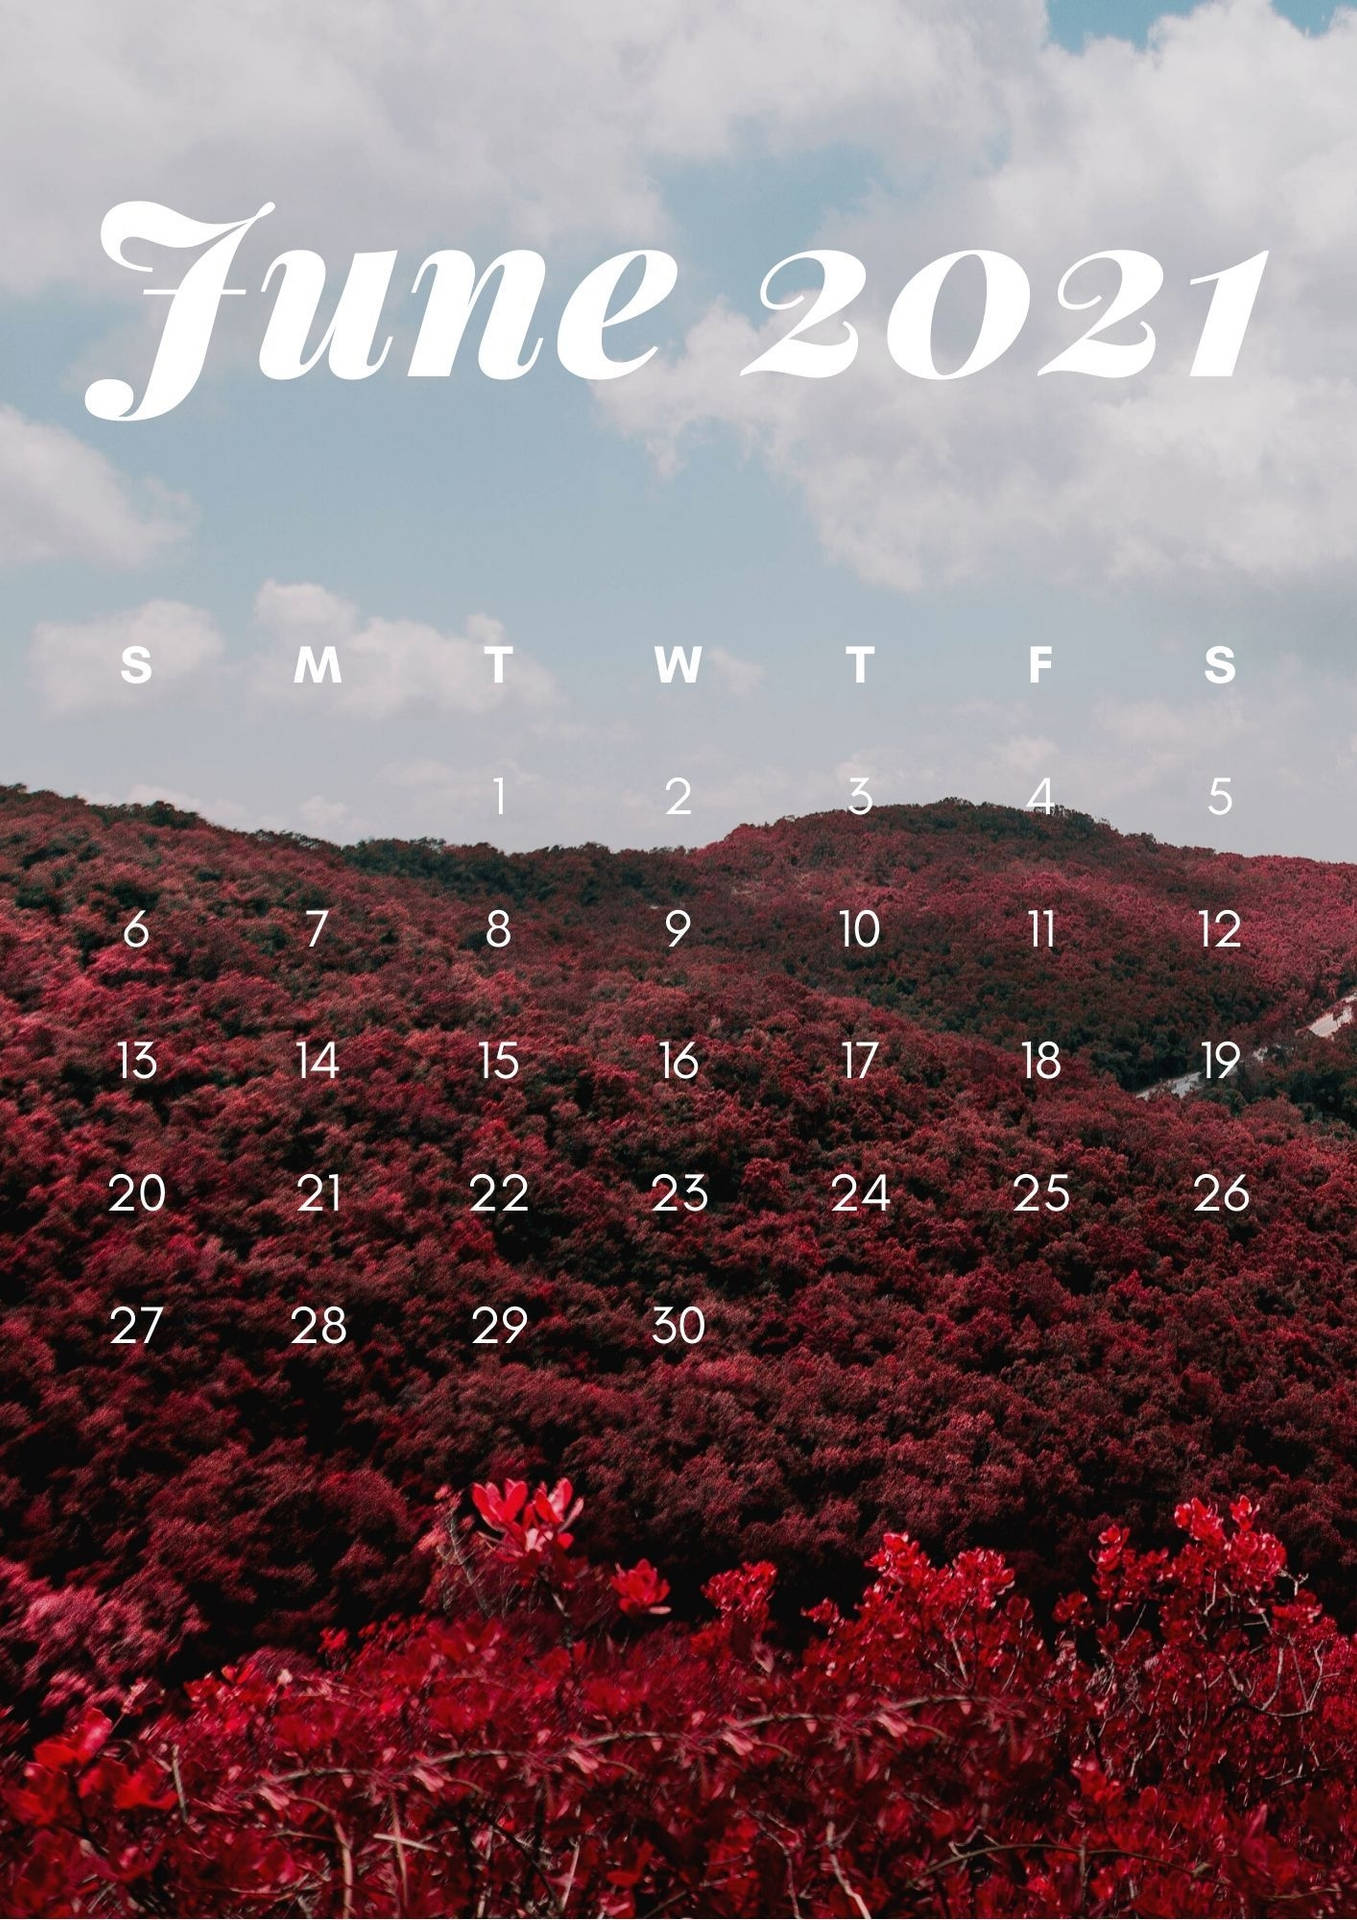 Juni 2021 Kalender Billeder